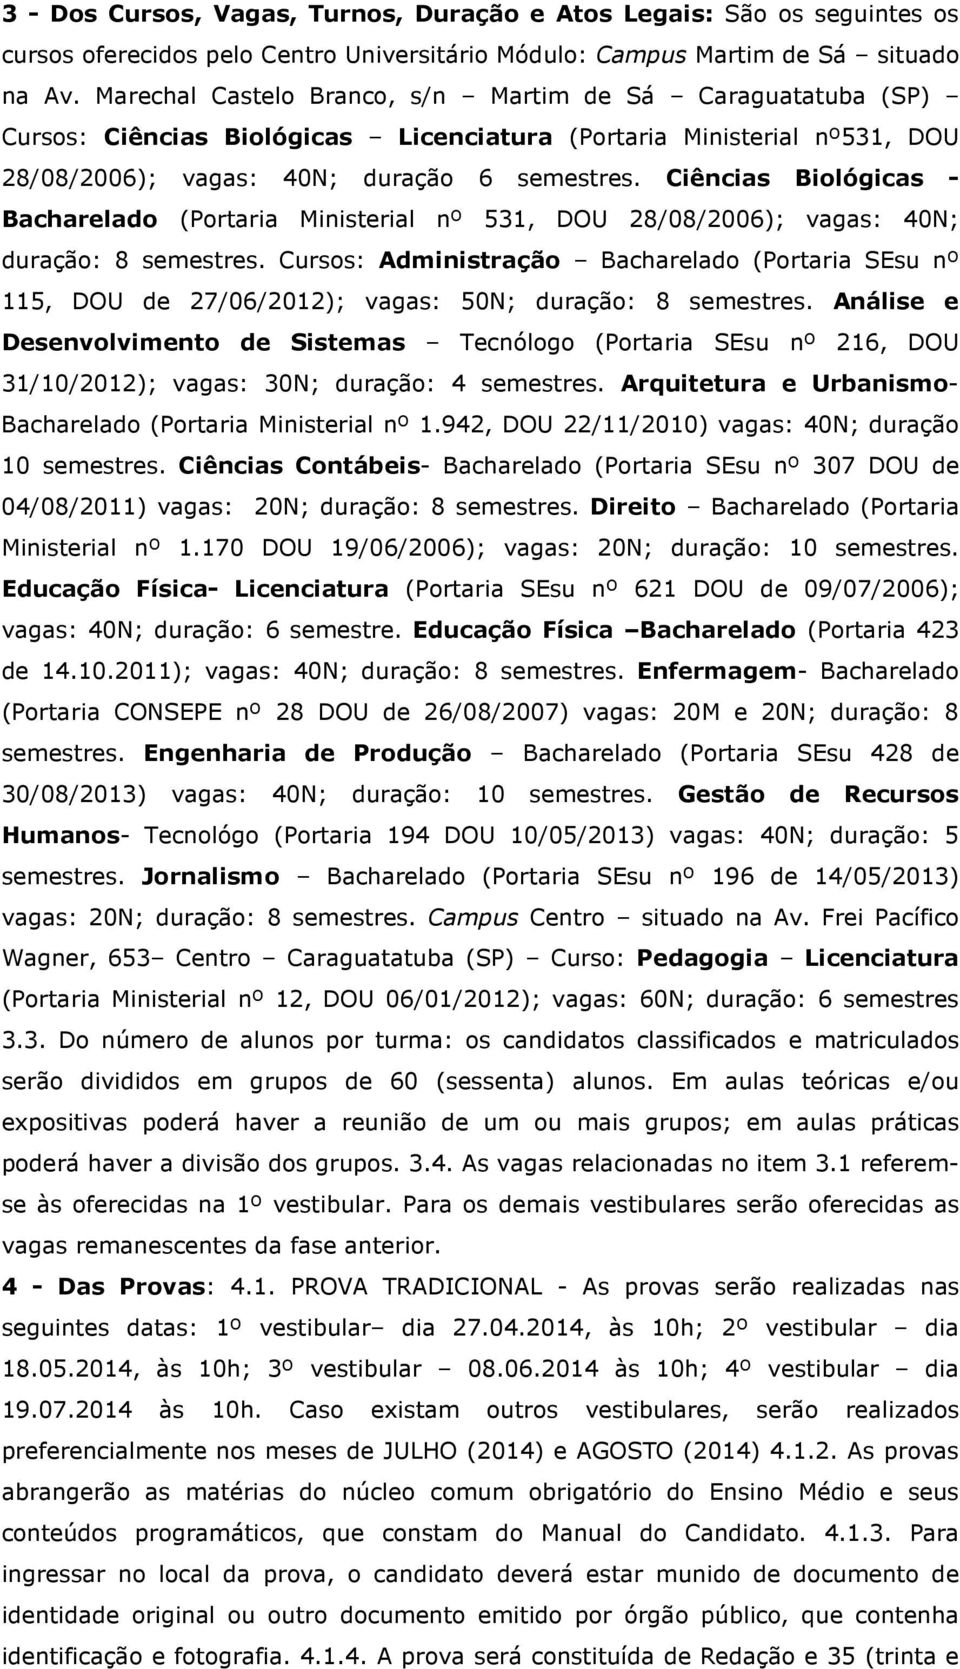 Ciências Biológicas - Bacharelado (Portaria Ministerial nº 531, DOU 28/08/2006); vagas: 40N; duração: 8 semestres.